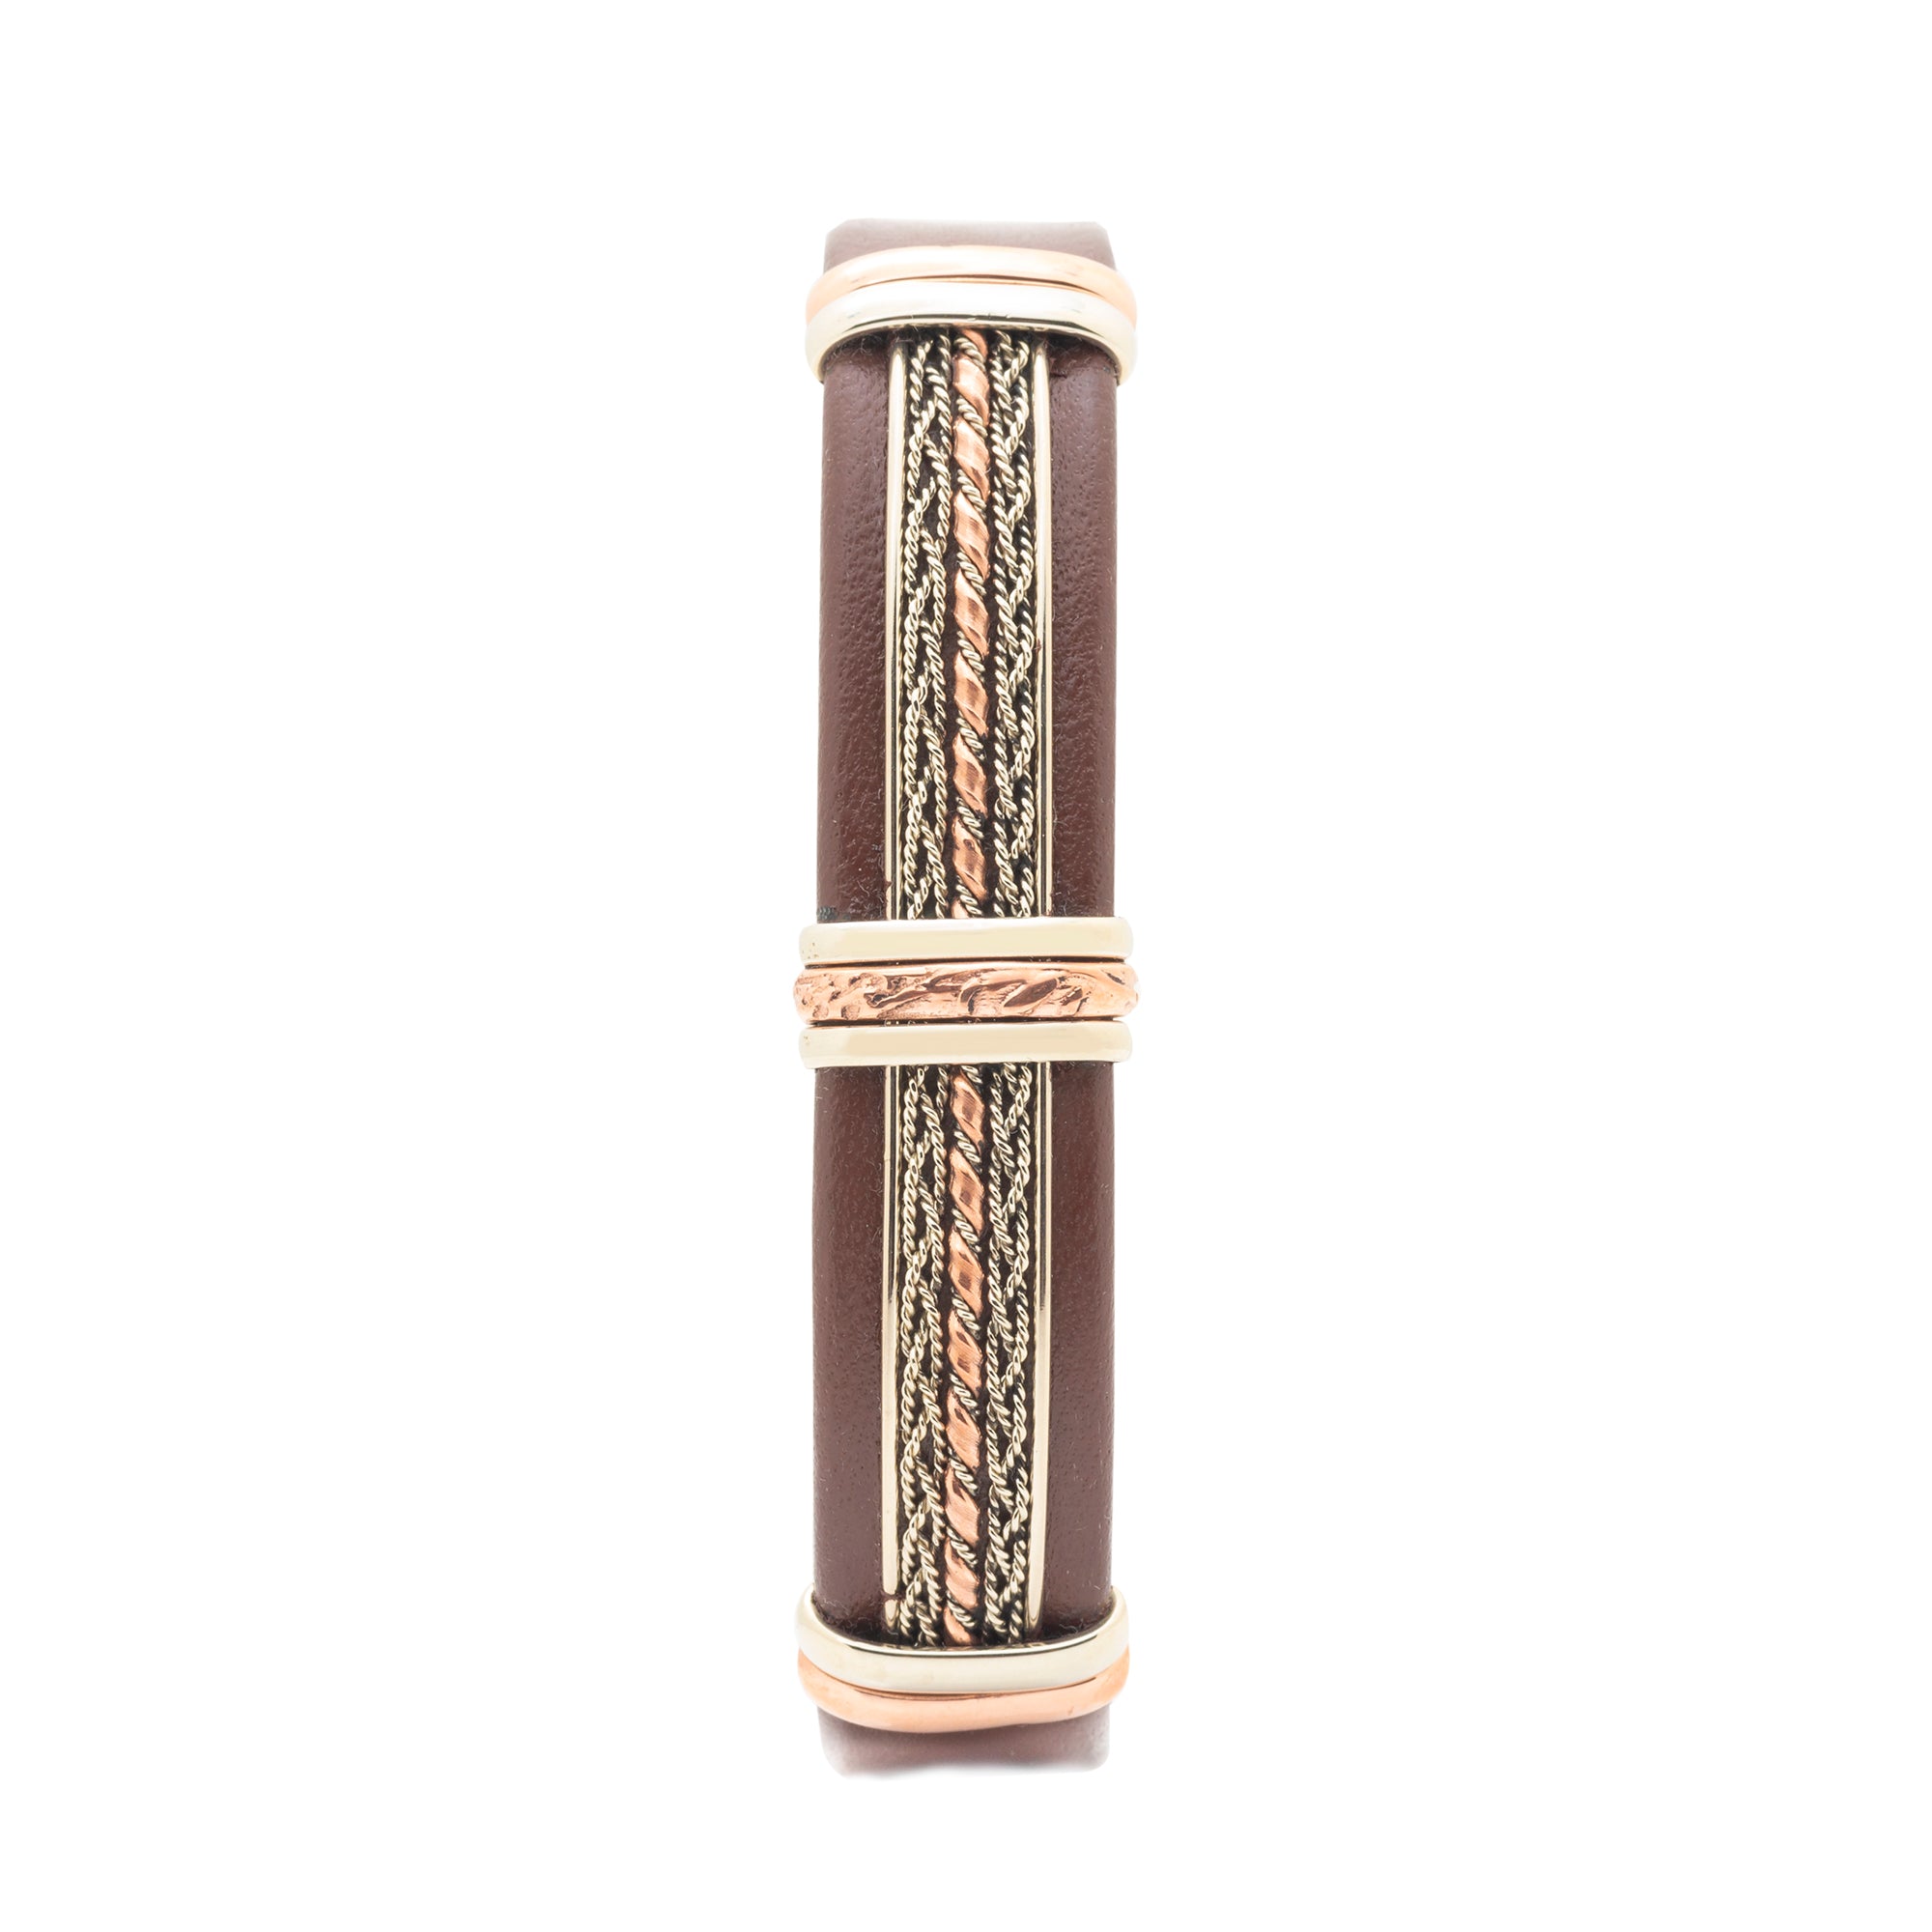 BR.ULB.0402 - Men's Leather Bracelet, Brown